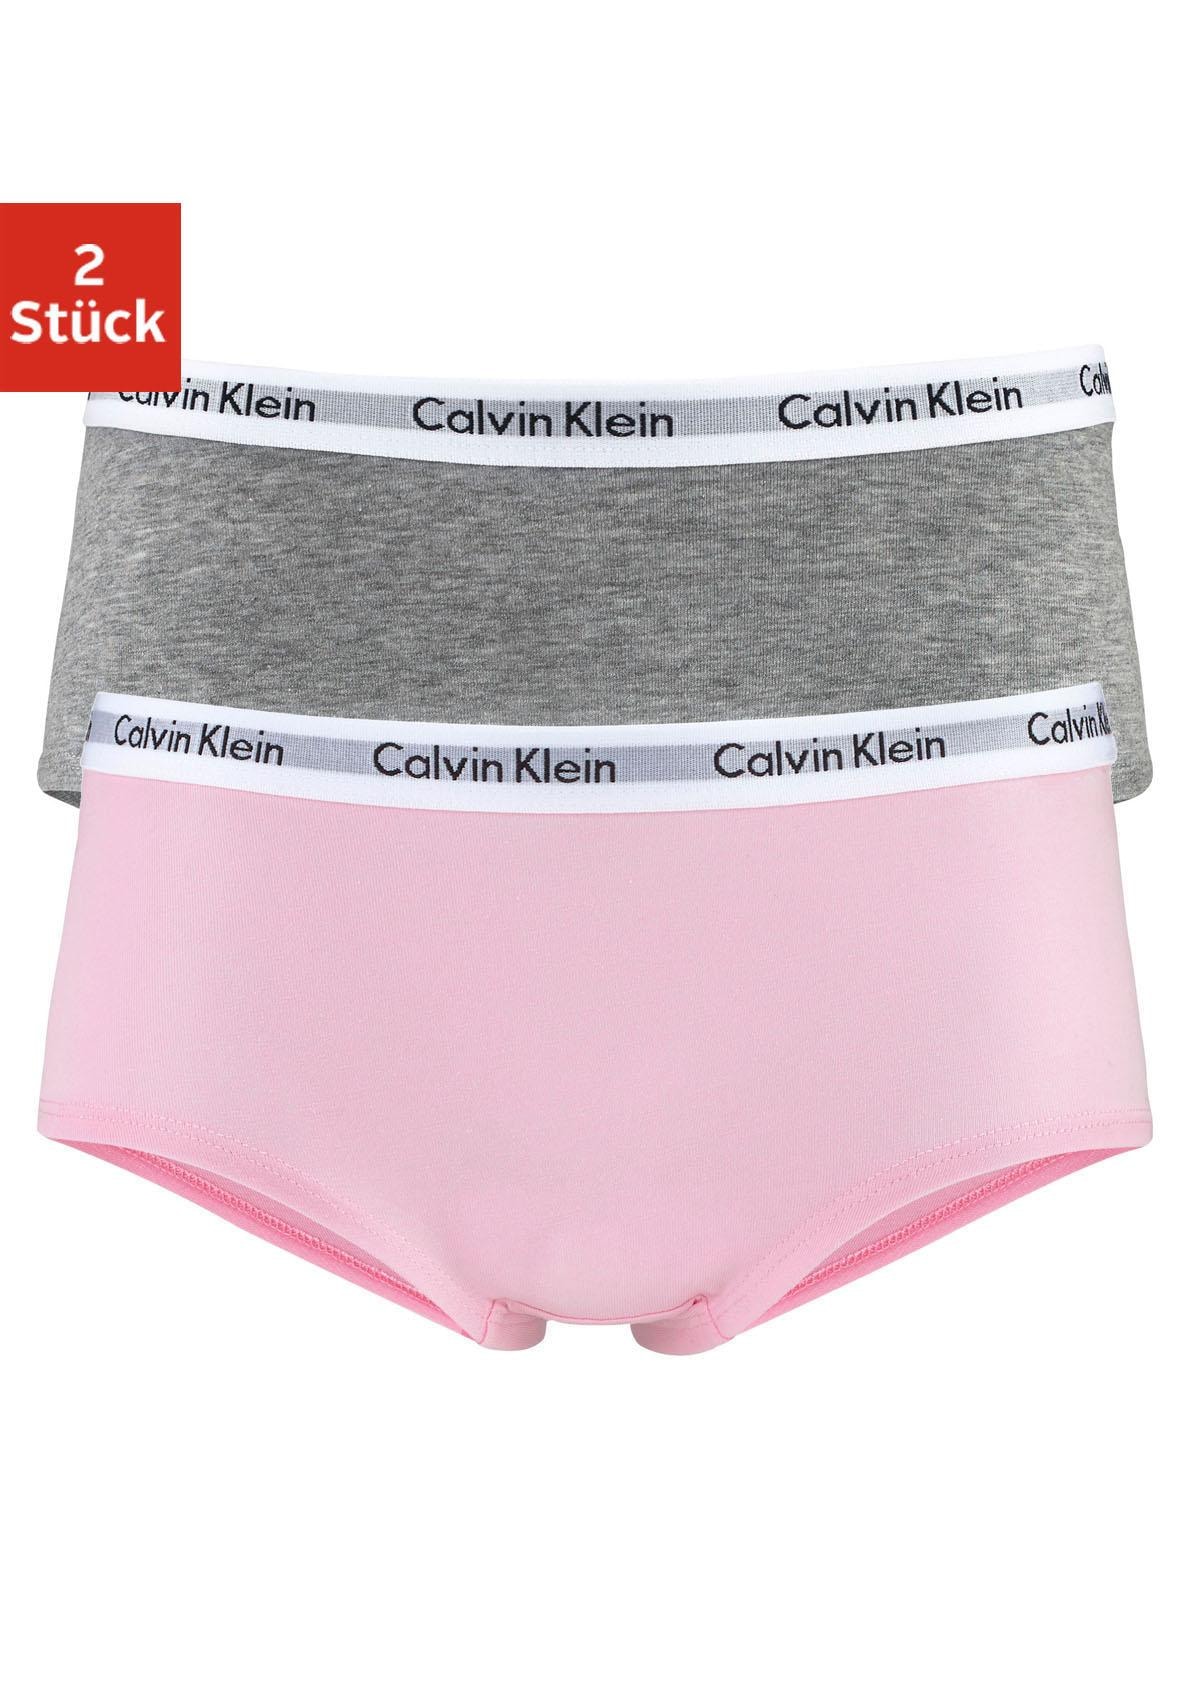 Calvin Klein Panty, Mädchen Kids MiniMe,für (2 St.), Kinder bei Junior mit OTTO Logobund